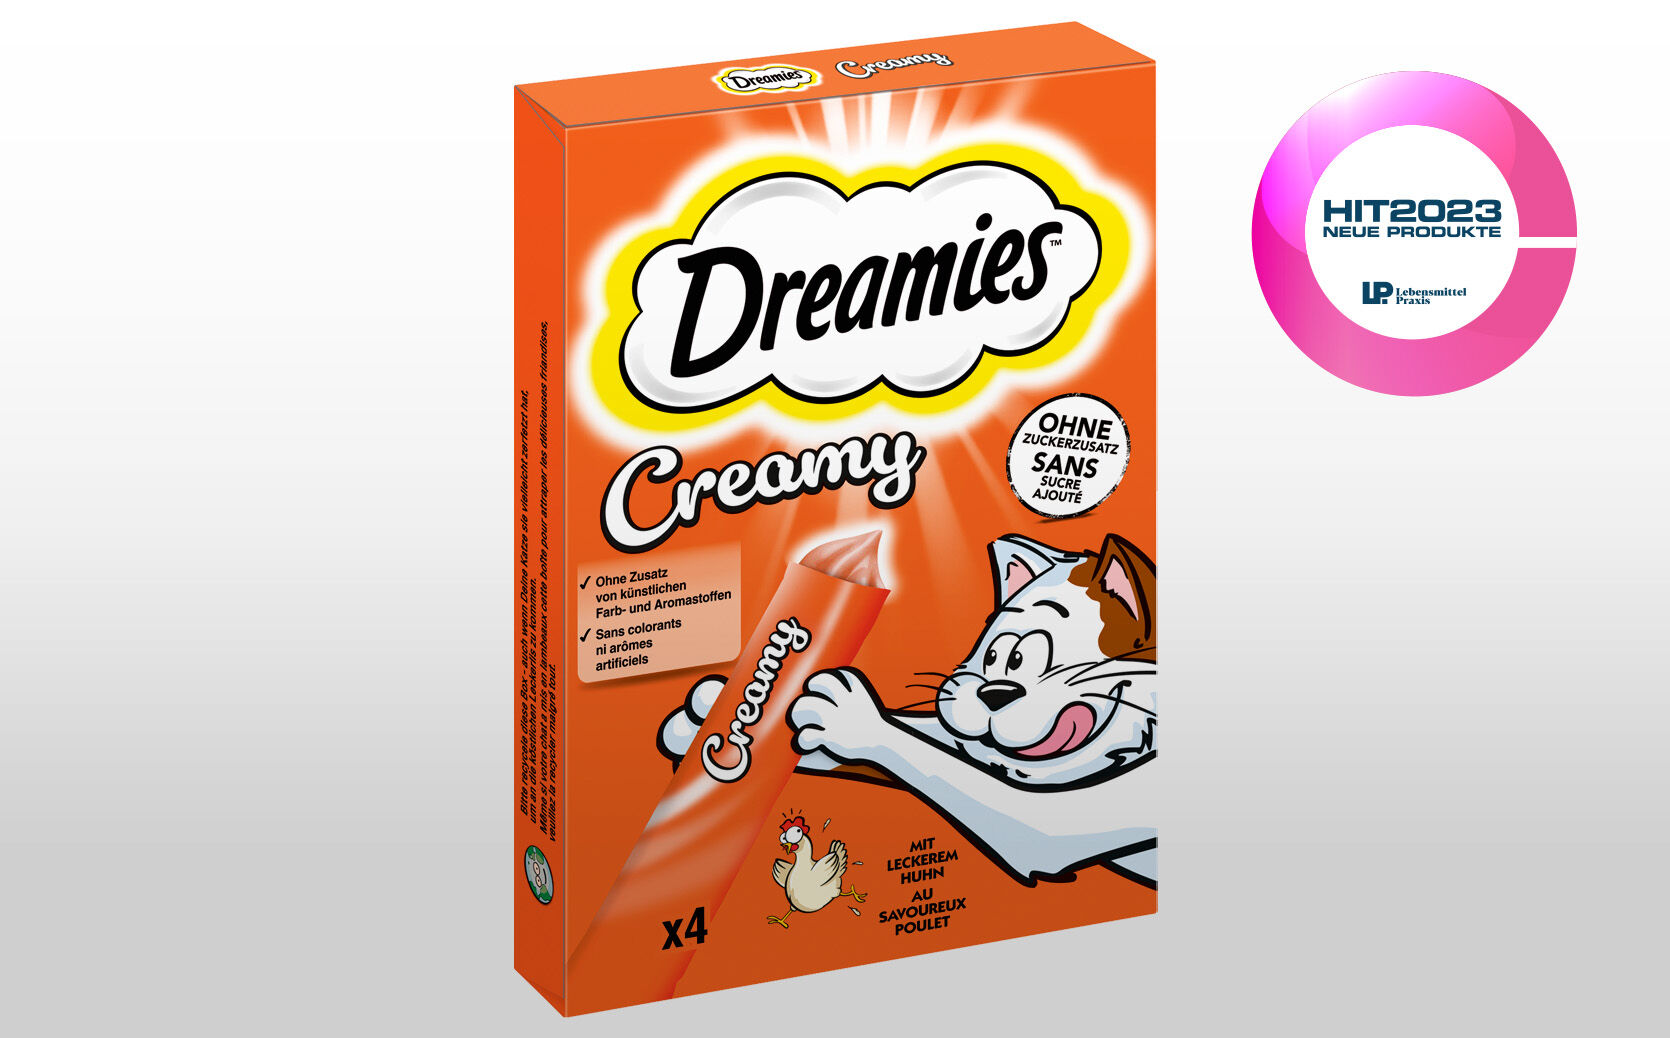 DREAMIES™ Creamy: Vielfach ausgezeichnete Vielfalt